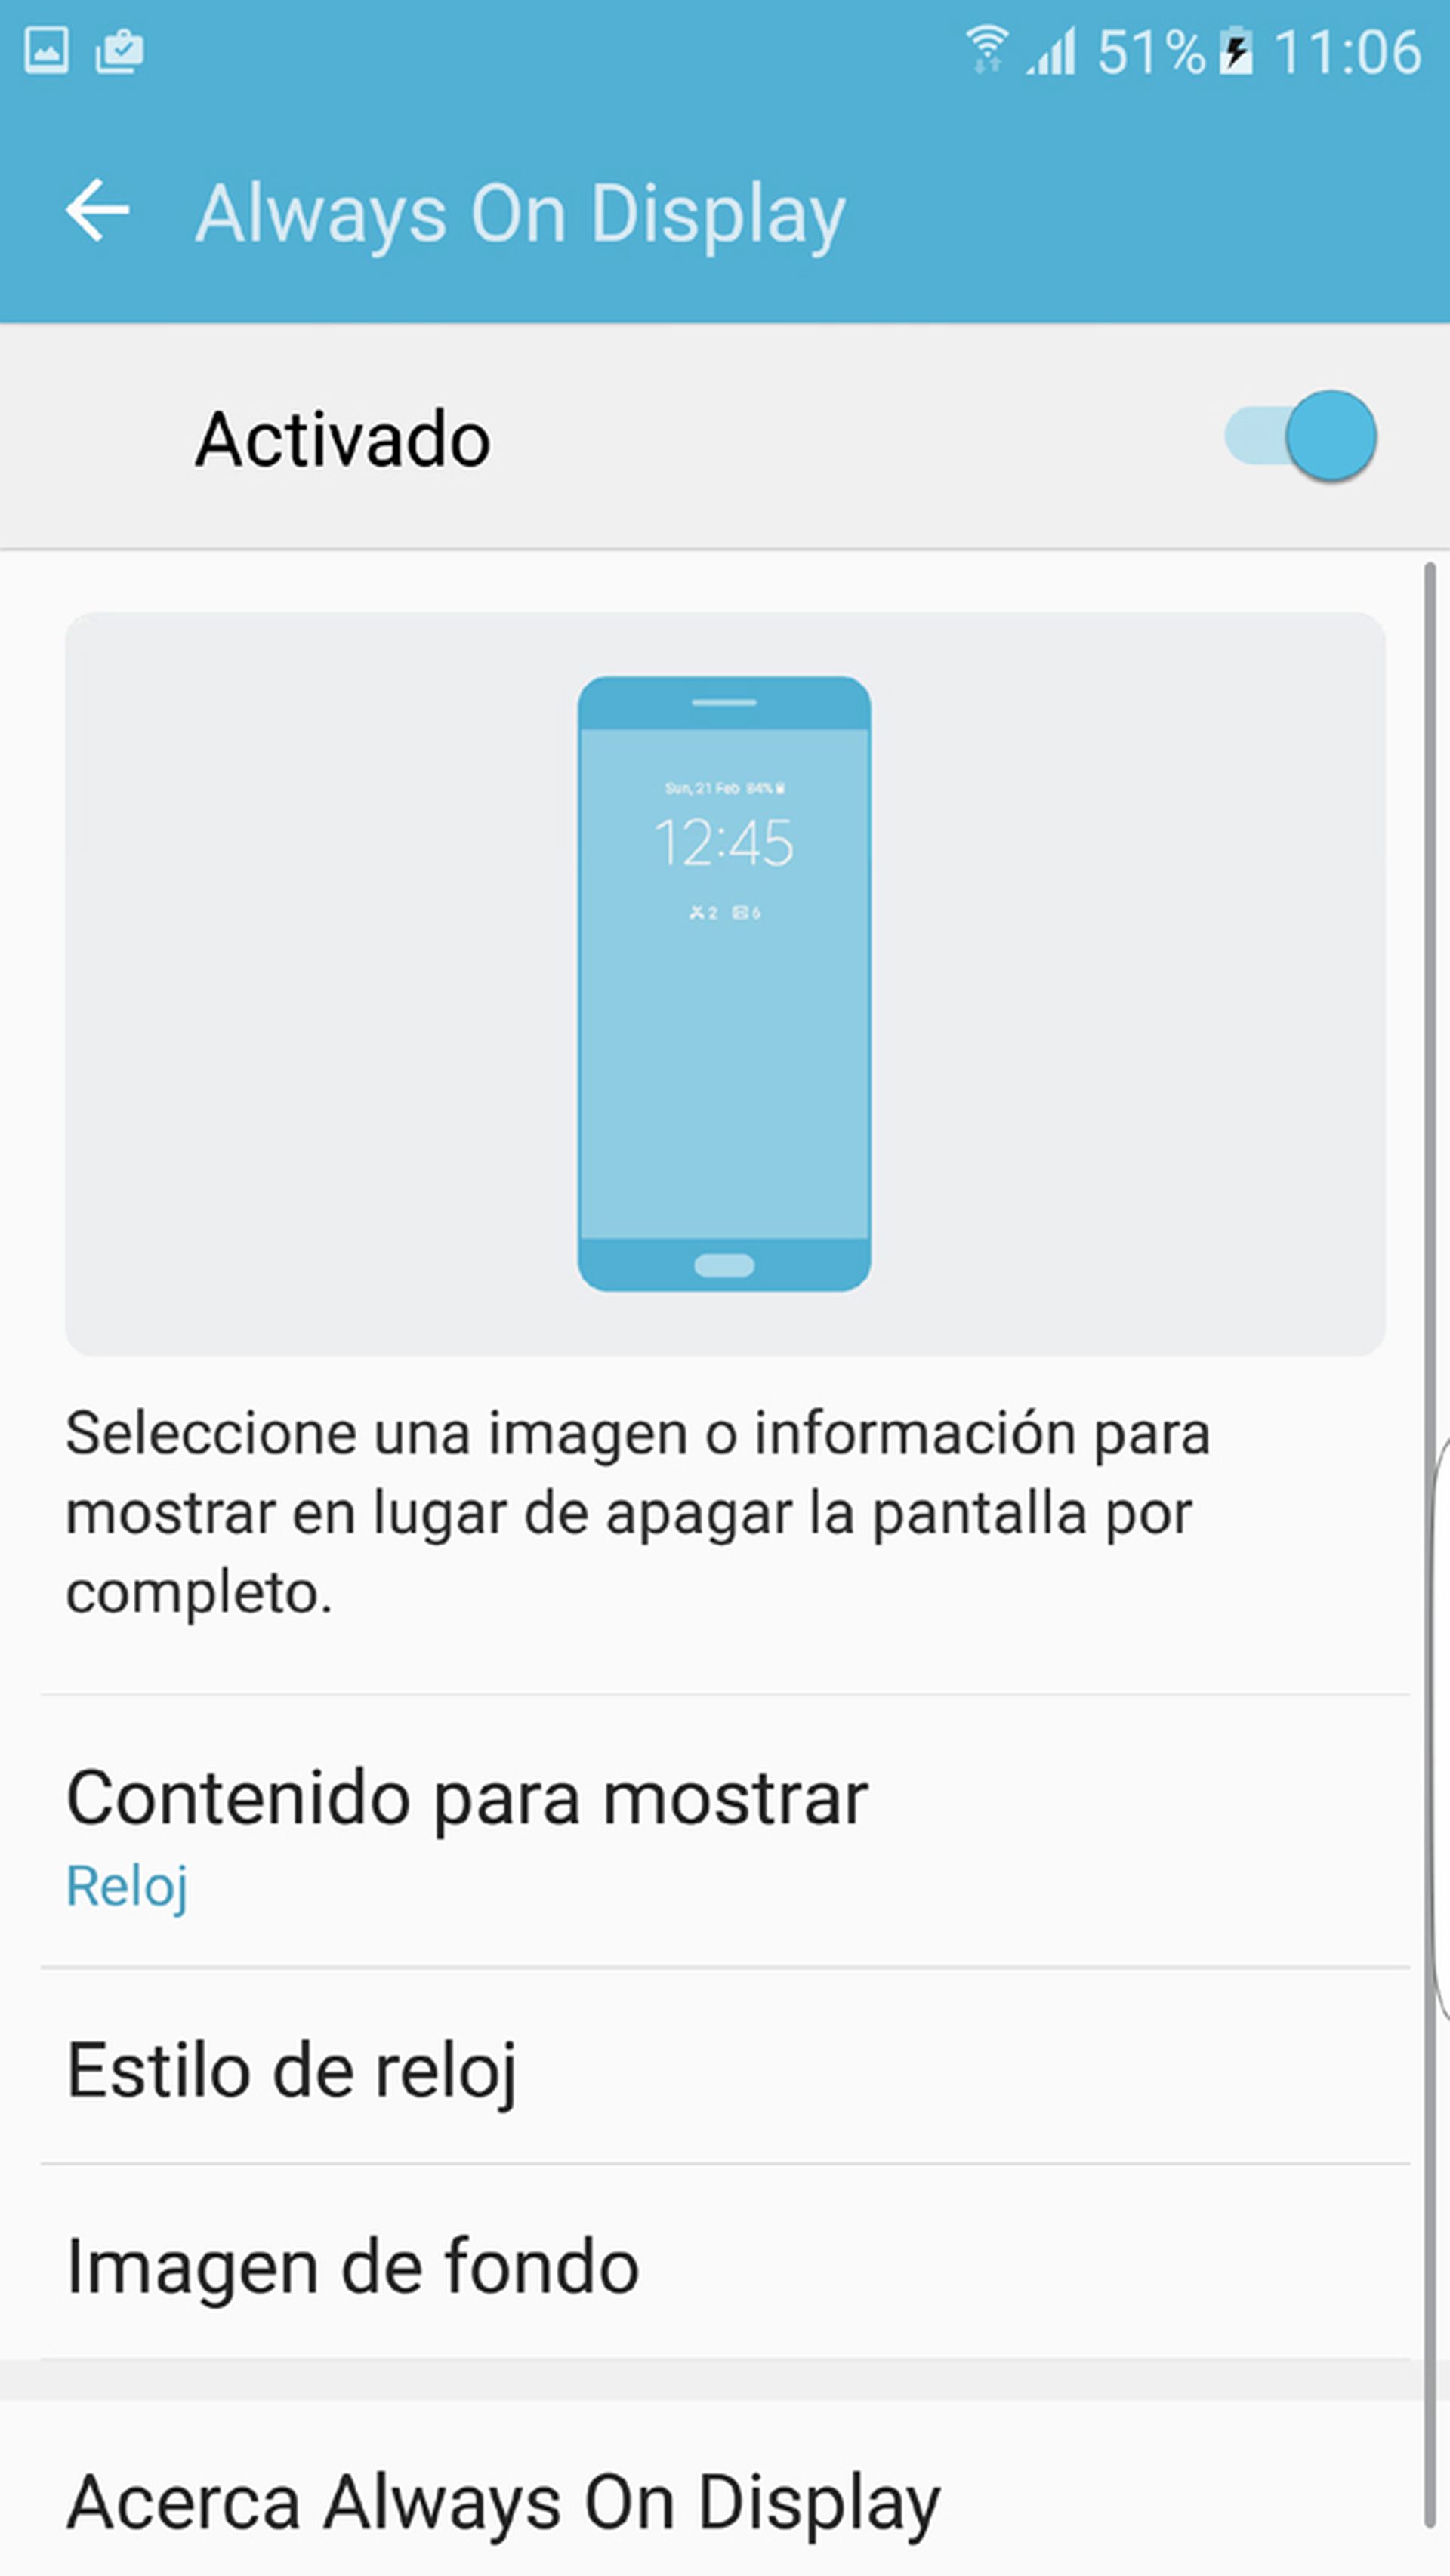 Función de Always On Display del Galaxy S7 Edge de Samsung